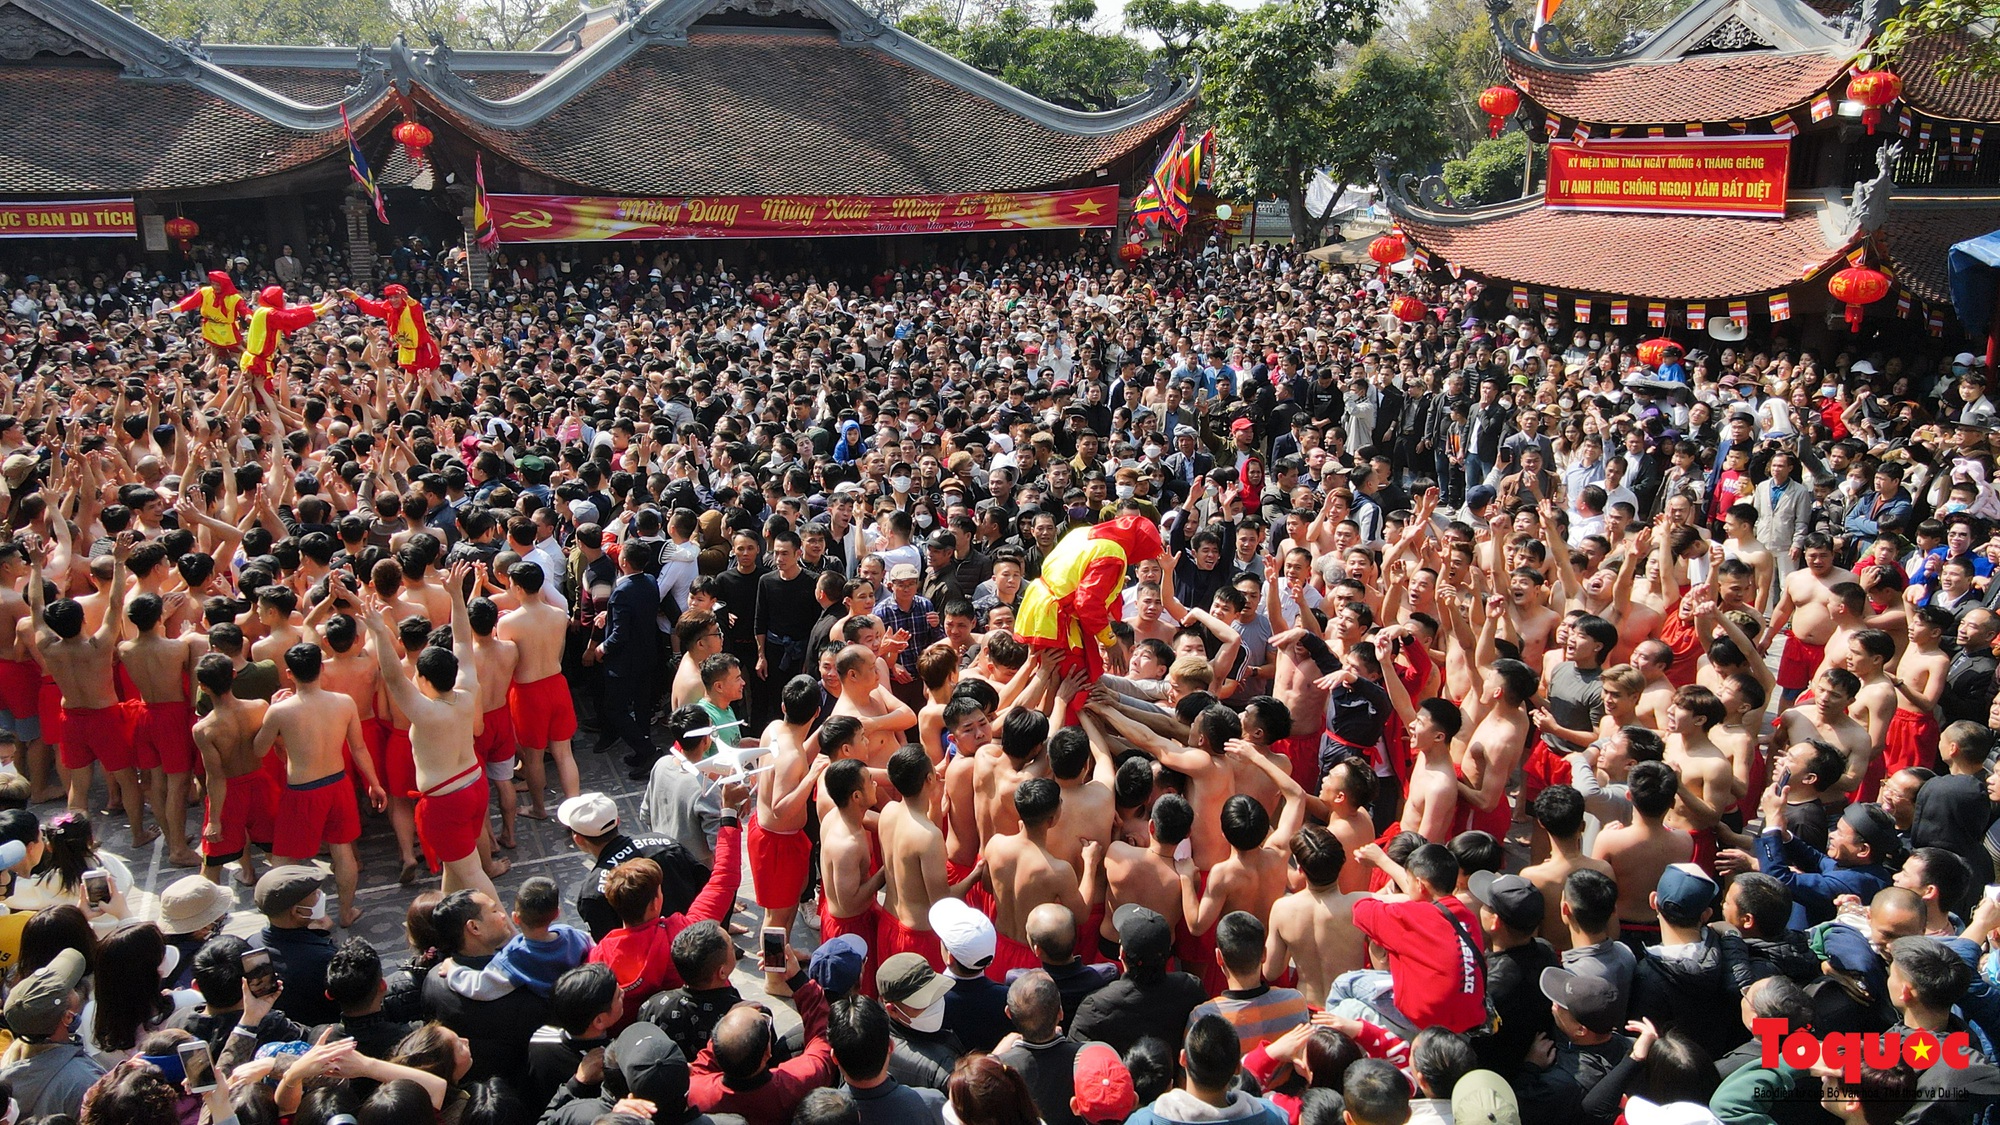 Tưng bừng, rộn ràng lễ hội rước pháo khổng lồ ở làng Đồng Kỵ - Ảnh 19.